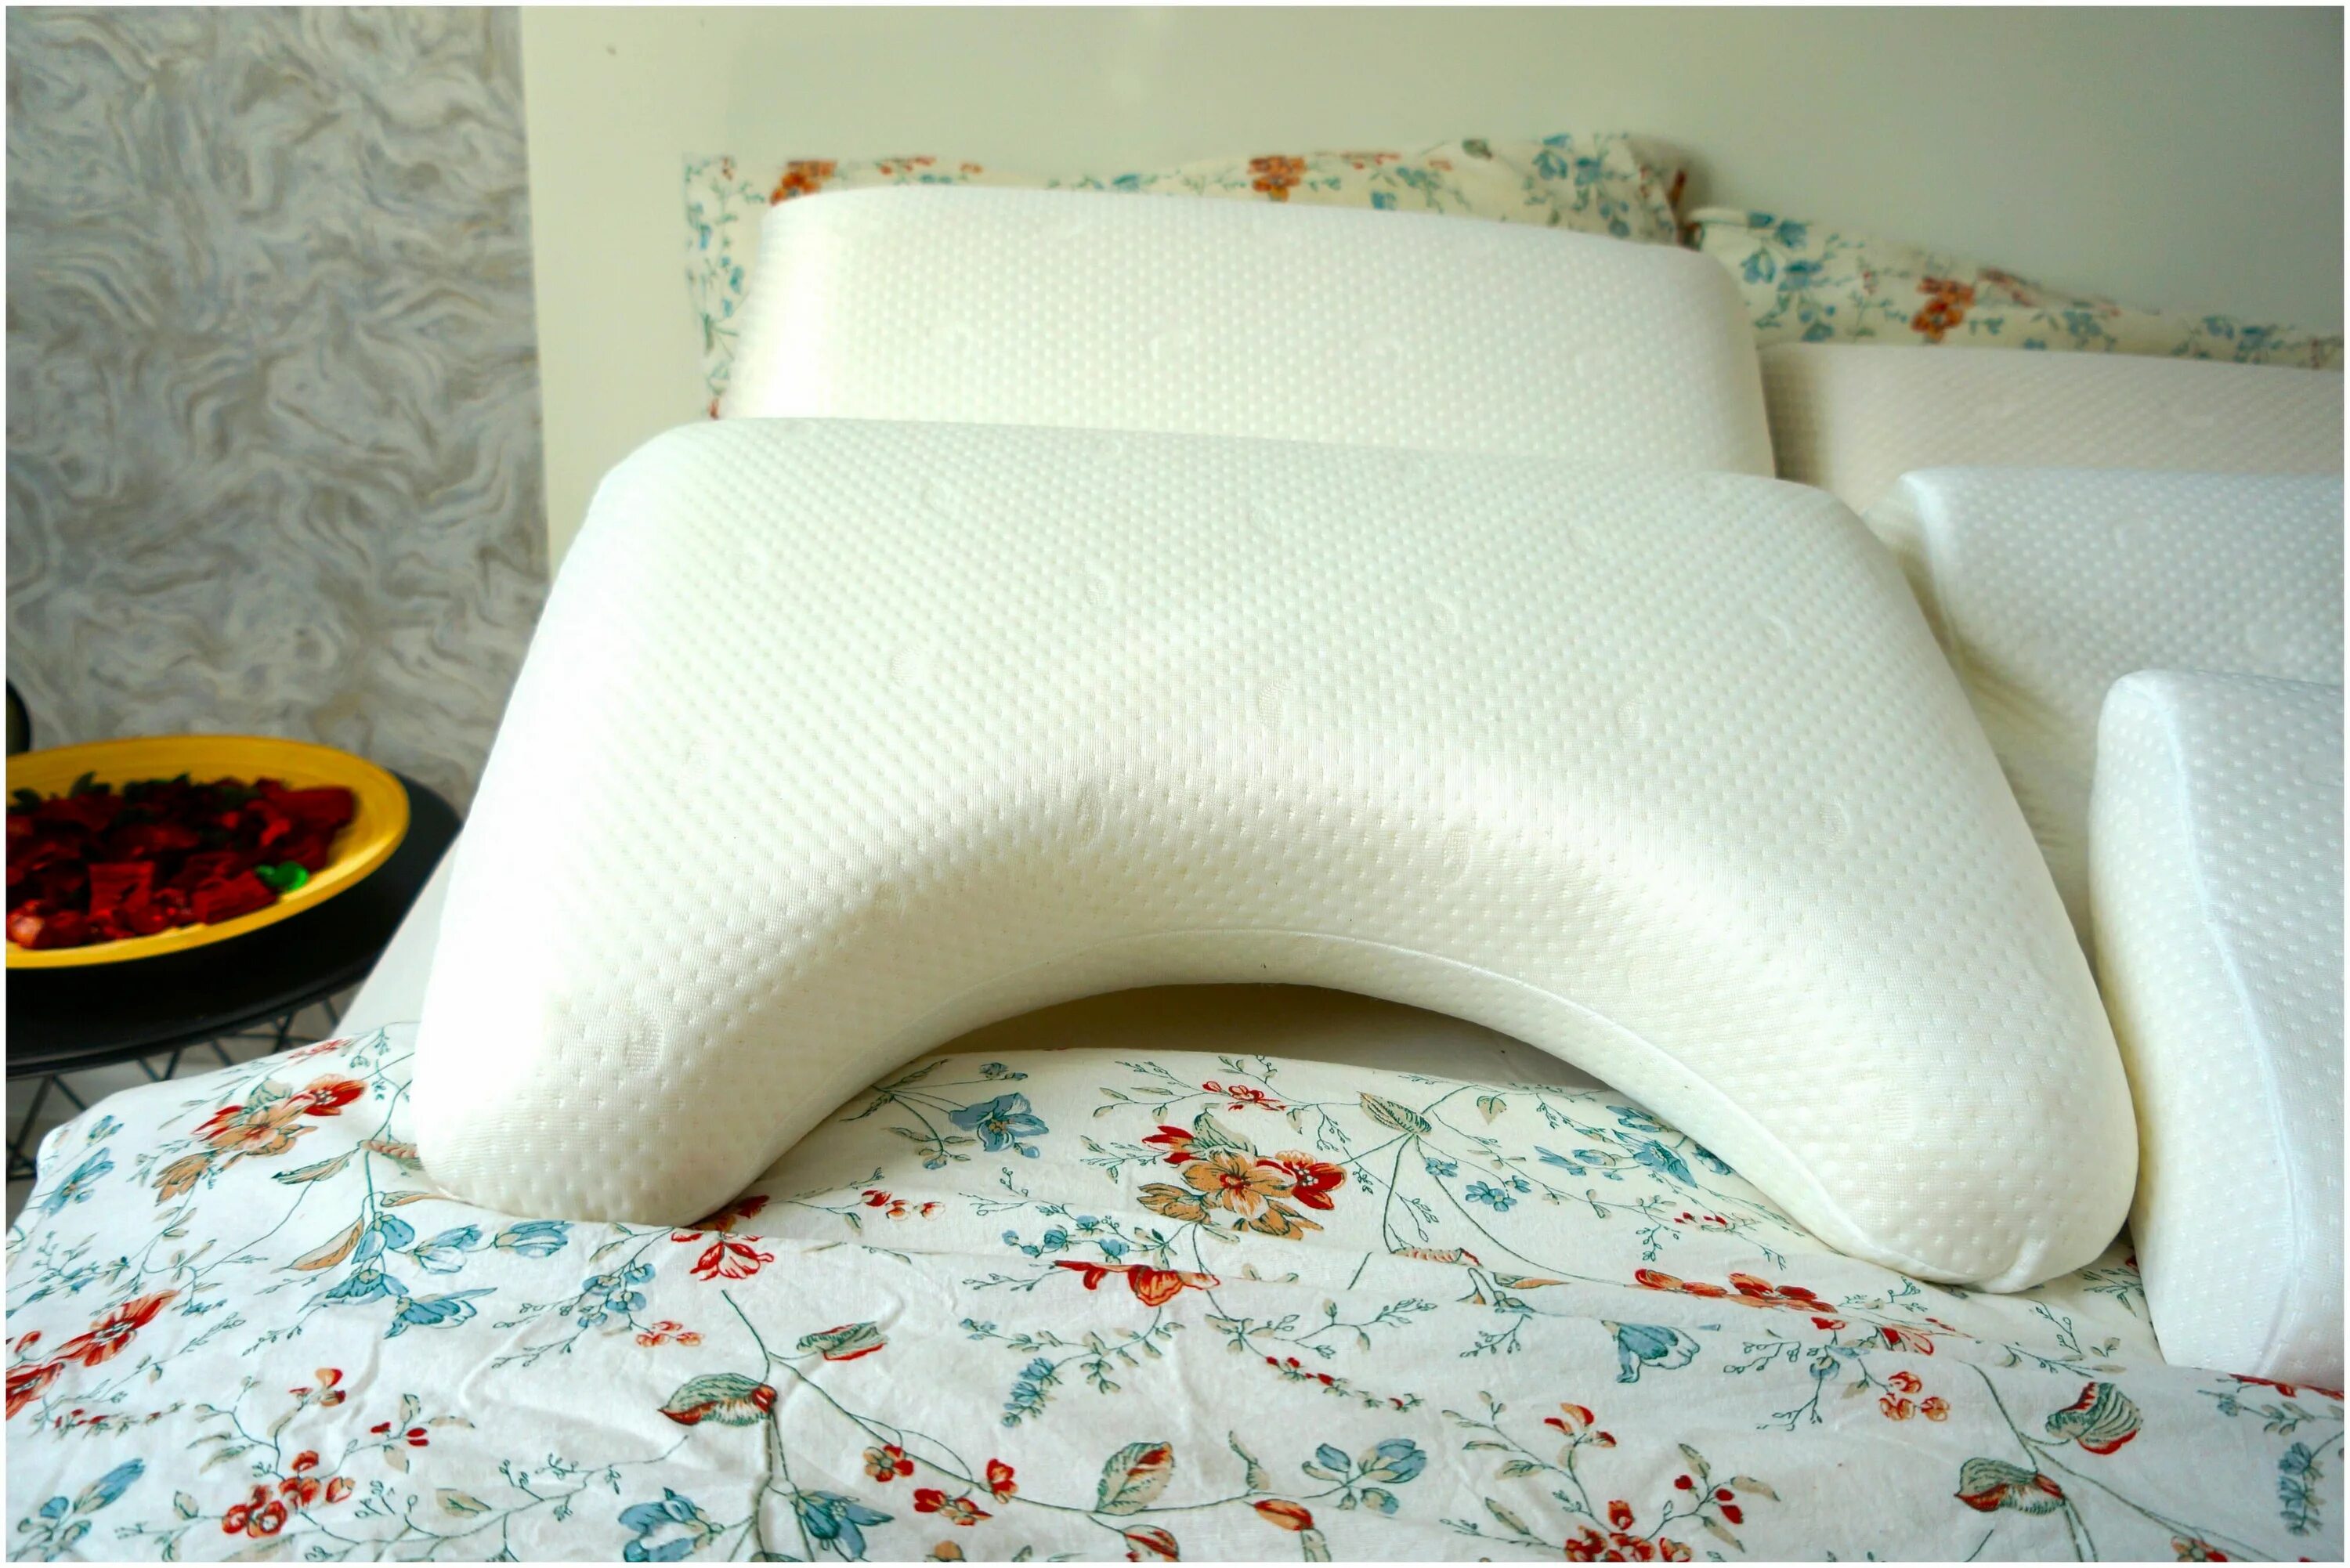 Ортопедическая подушка для сна купить в москве. Ортопедическая подушка для сна. Подушка с выемкой для плеча. Подушка с выемкой для лица. Подушка с выемкой под руку для сна.